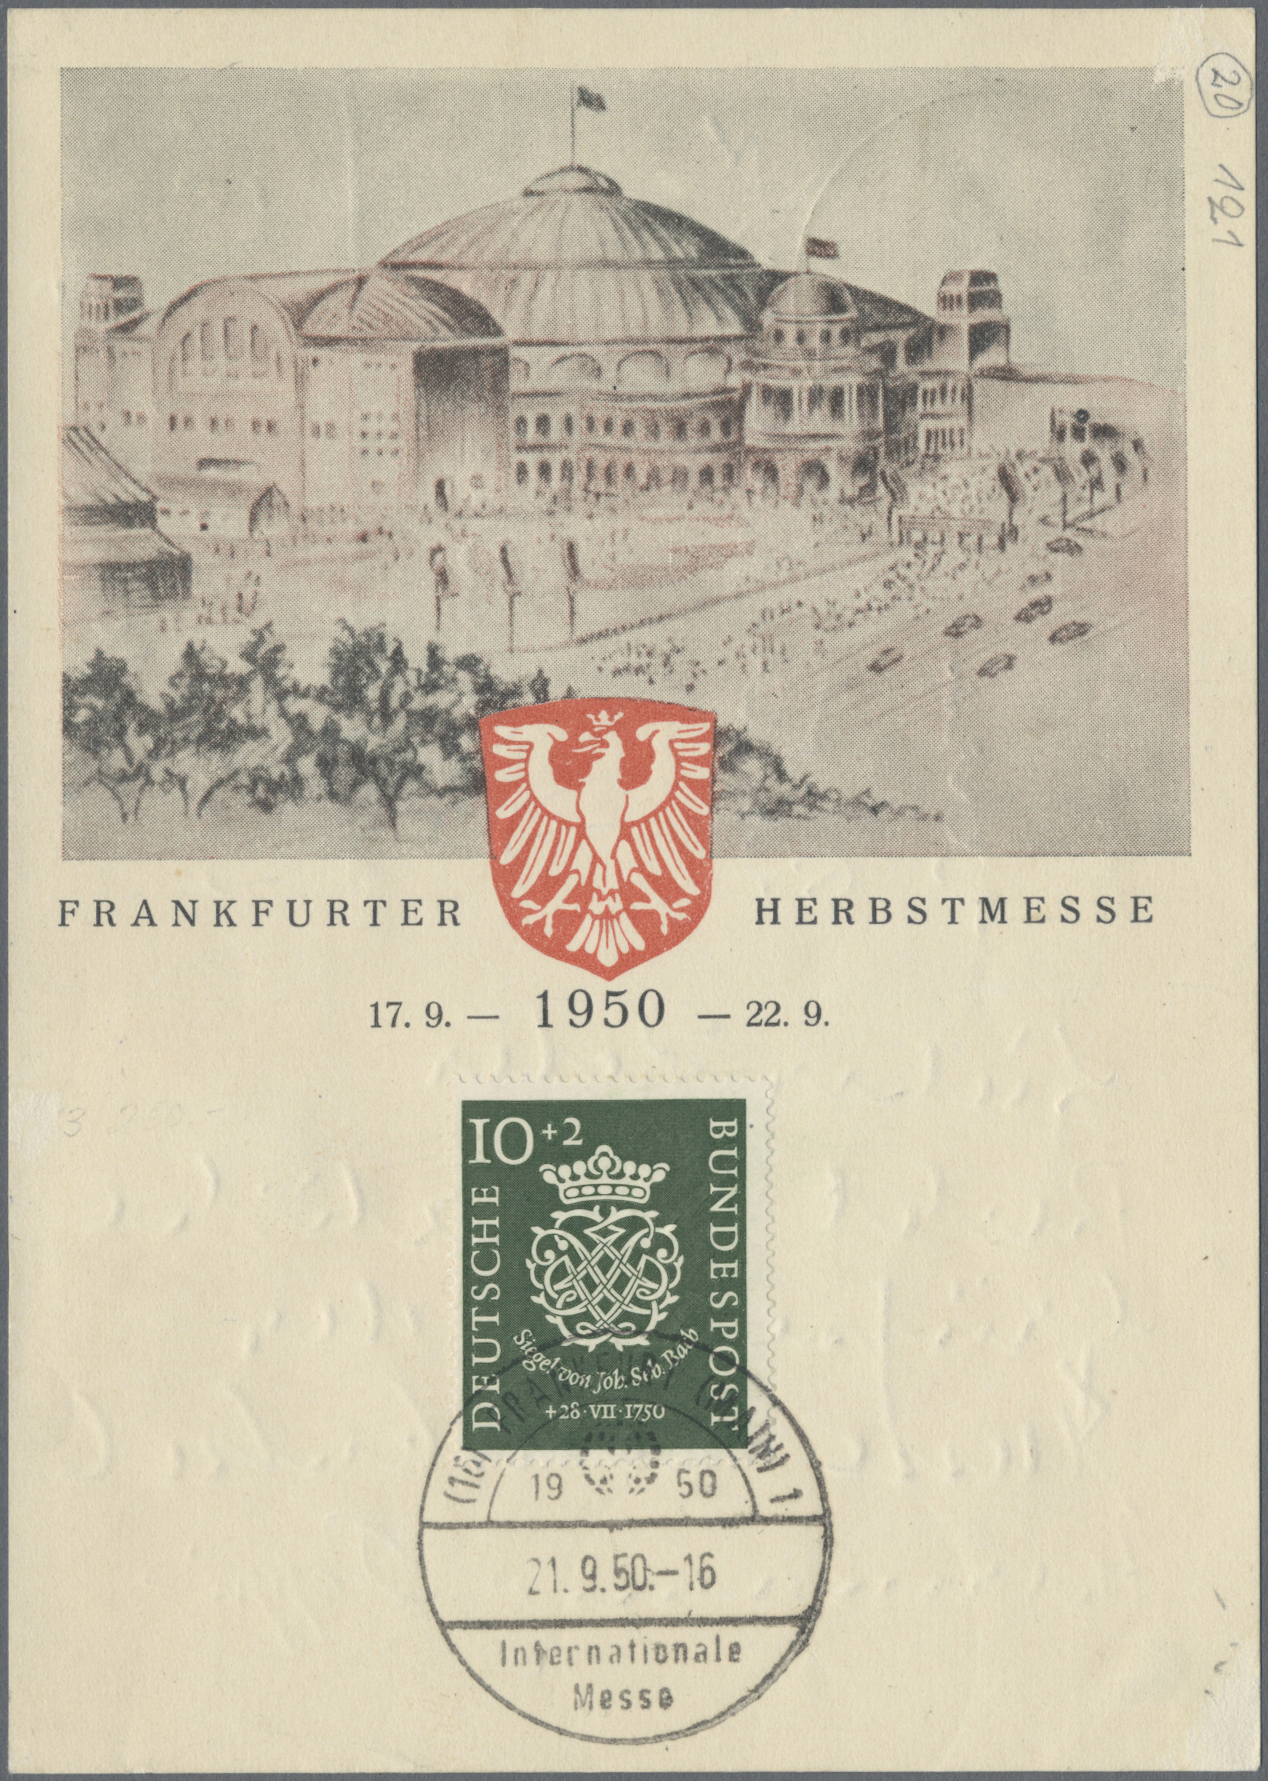 Lot 11520 - deutschland nach 1945  -  Auktionshaus Christoph Gärtner GmbH & Co. KG 56th AUCTION - Day 5